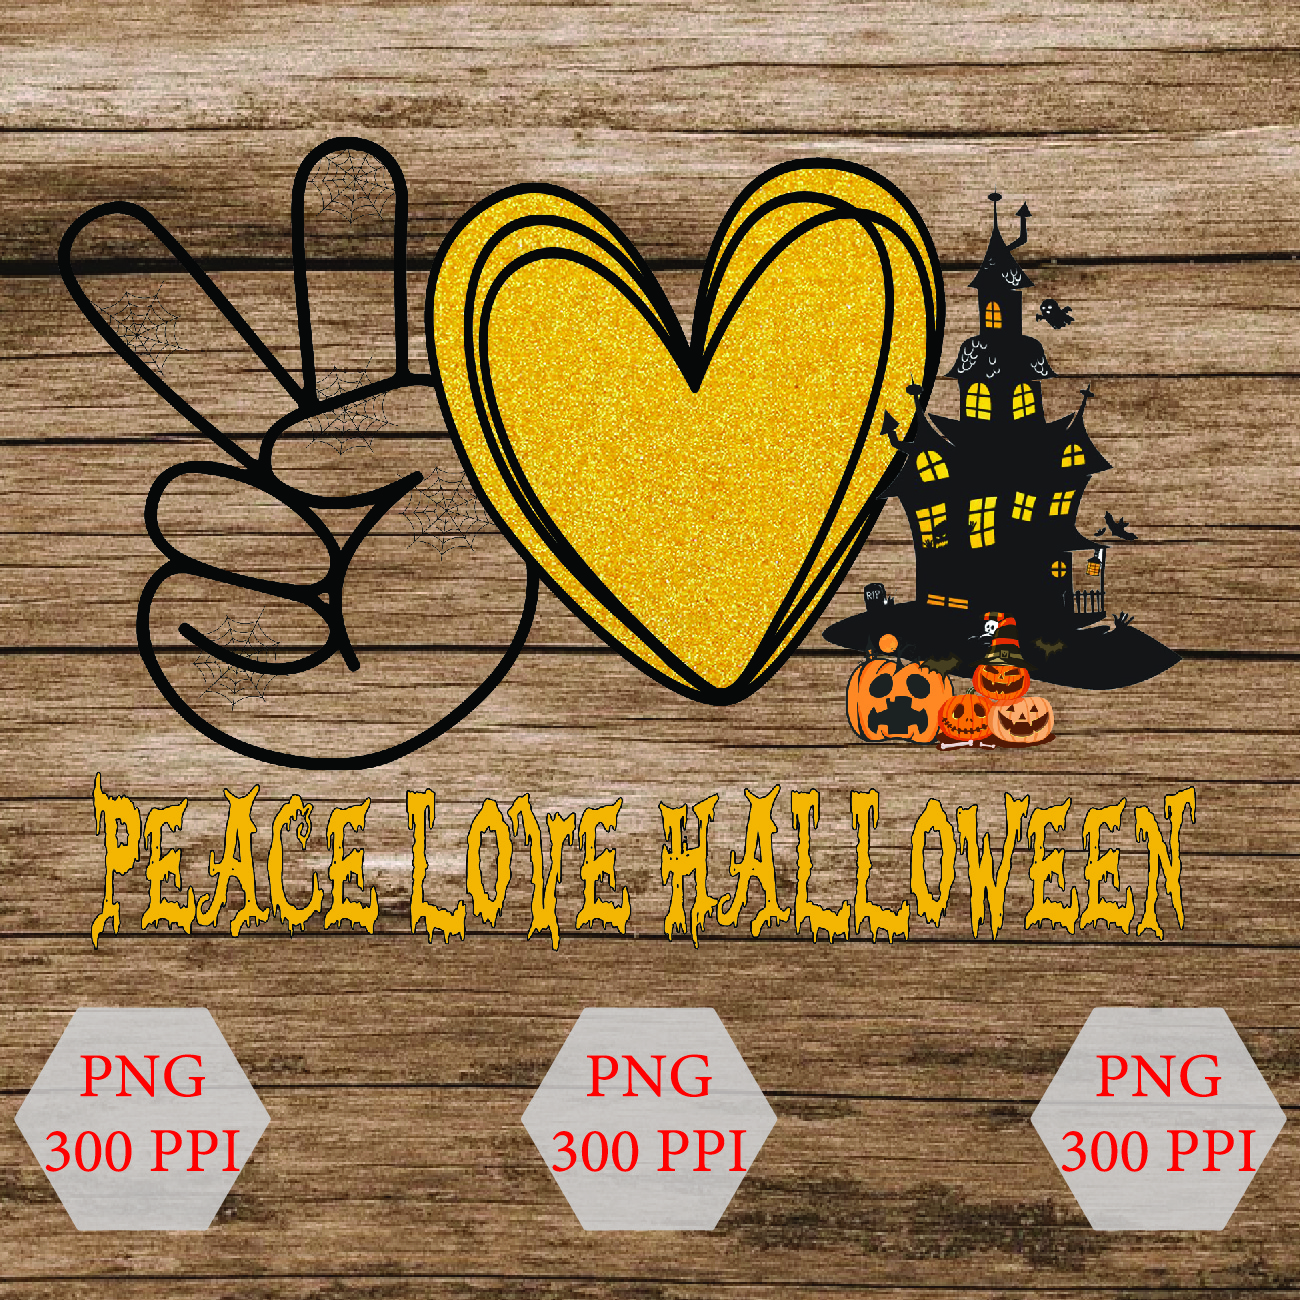 wtm wed 01 9 peace love Halloween, png, digital download, peace love designs